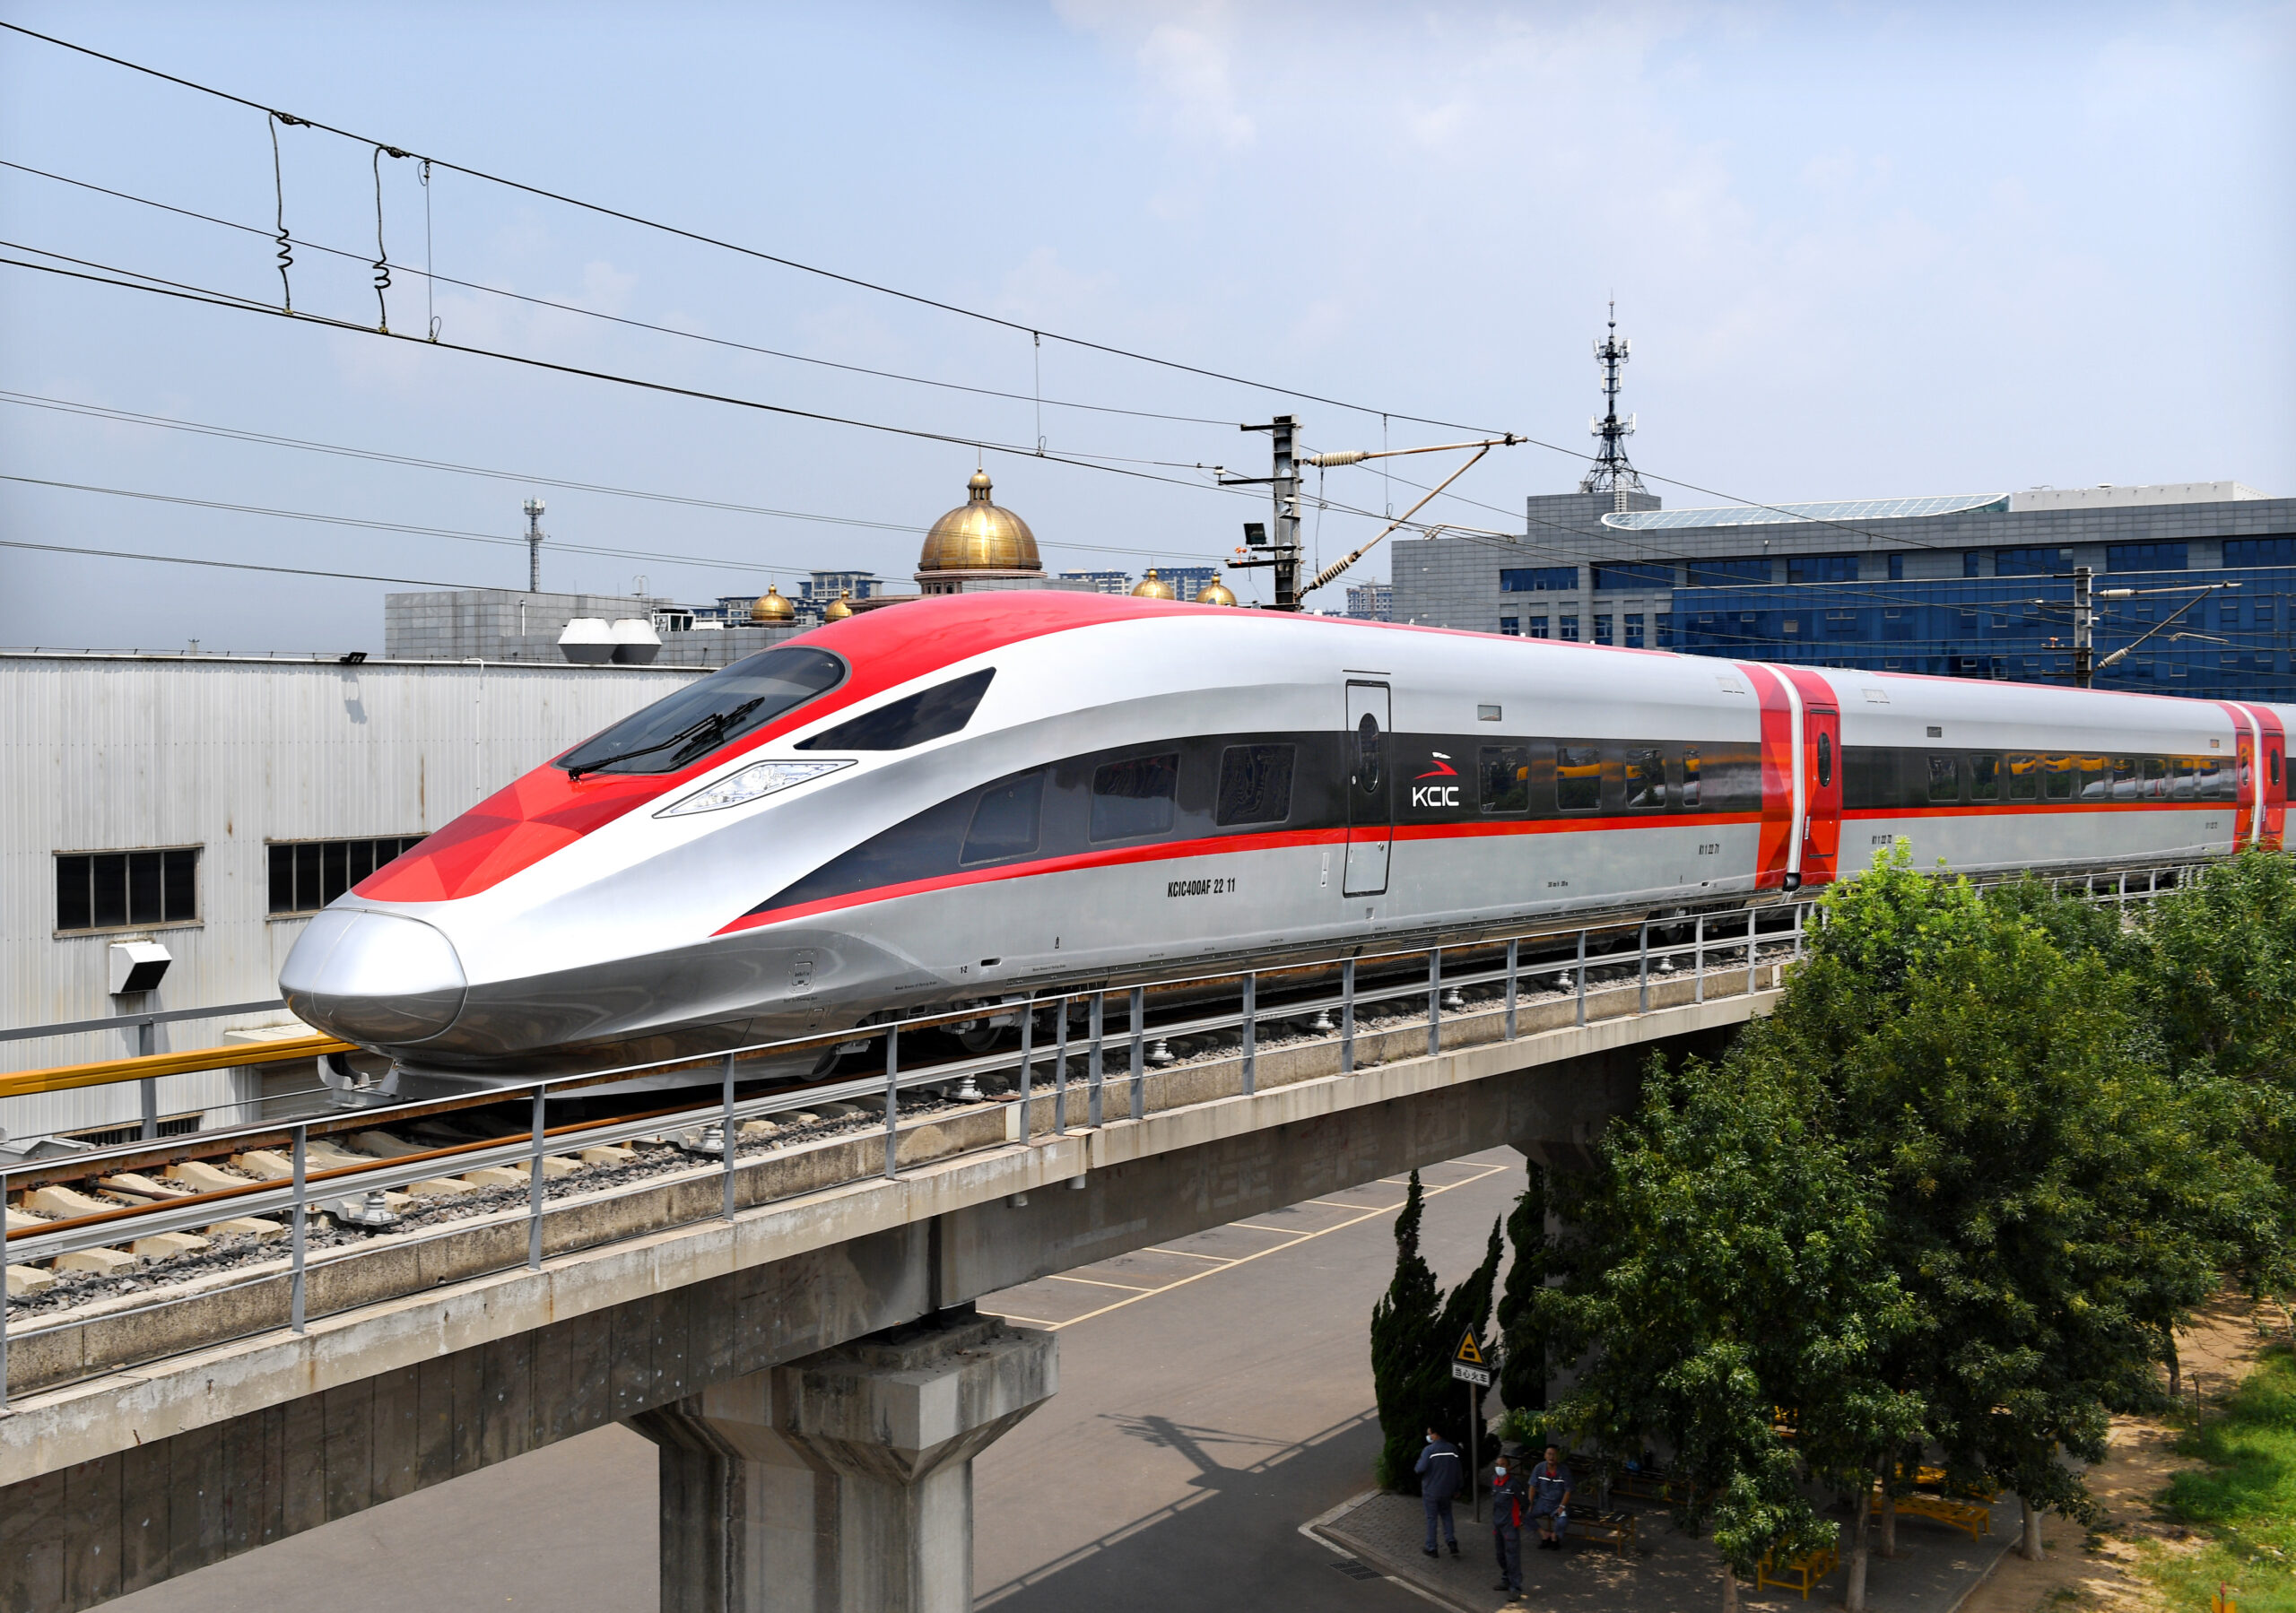 GLOBALink : จีนเปิดตัว 'ม้าเหล็ก' ผลิตพิเศษ วิ่งทางรถไฟความเร็วสูงในอินโดฯ